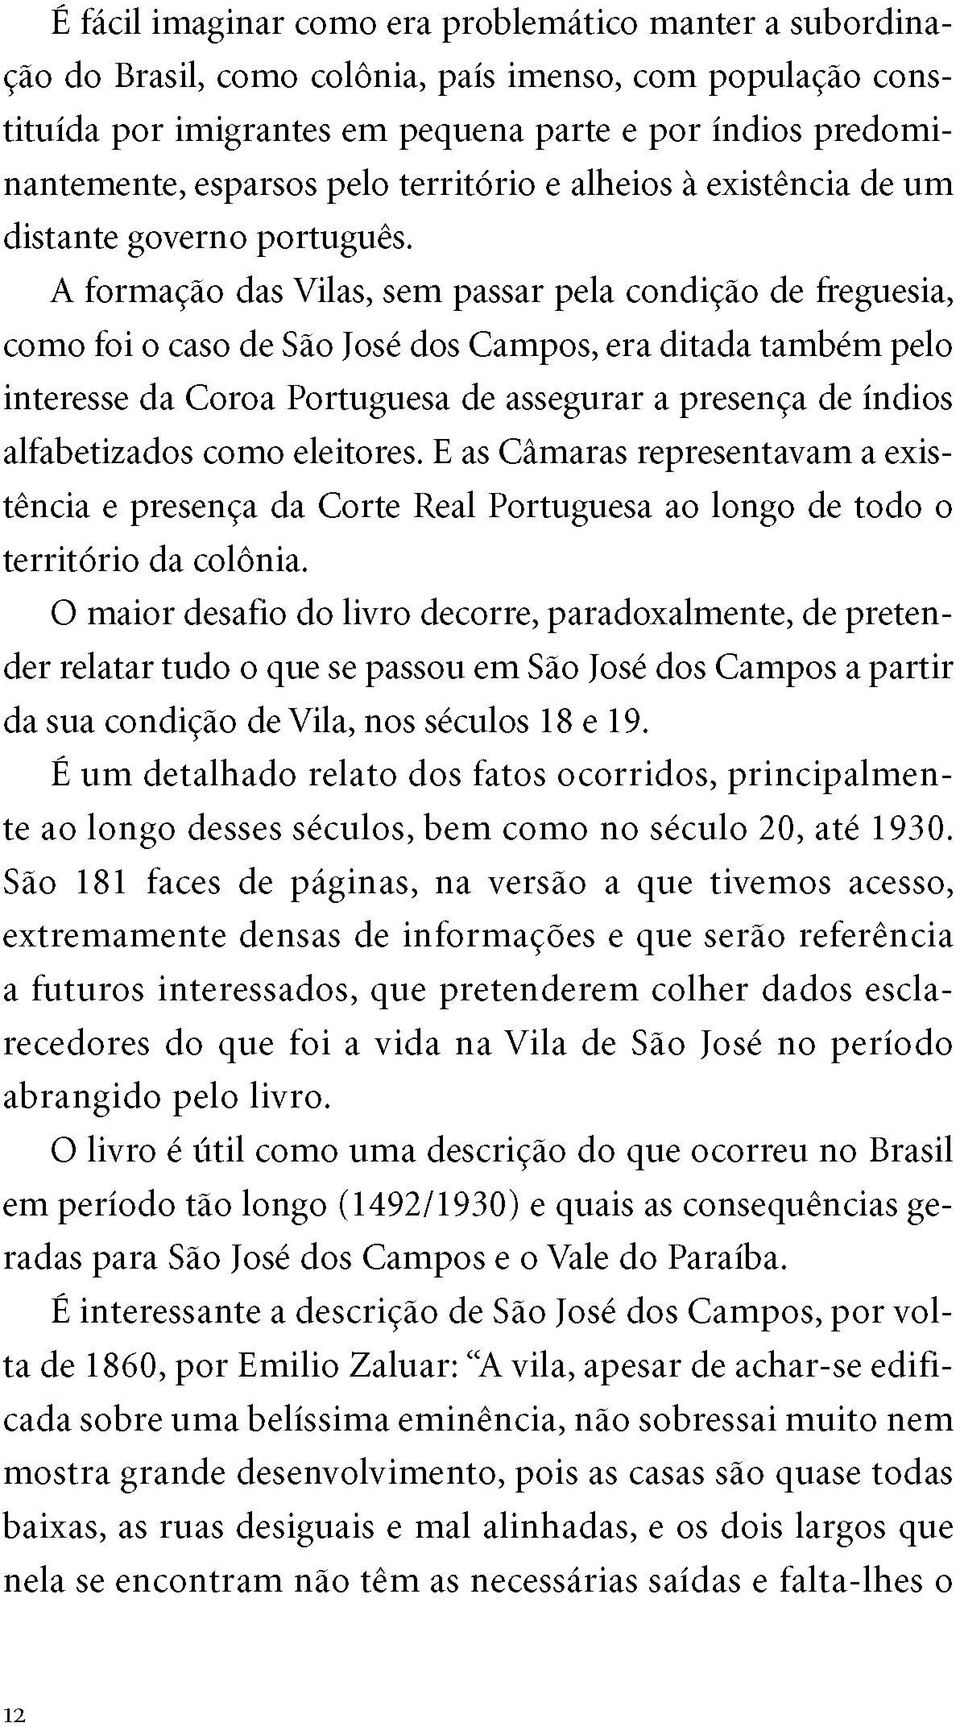 A formação das Vilas, sem passar pela condição de freguesia, como foi o caso de São José dos Campos, era ditada também pelo interesse da Coroa Portuguesa de assegurar a presença de índios